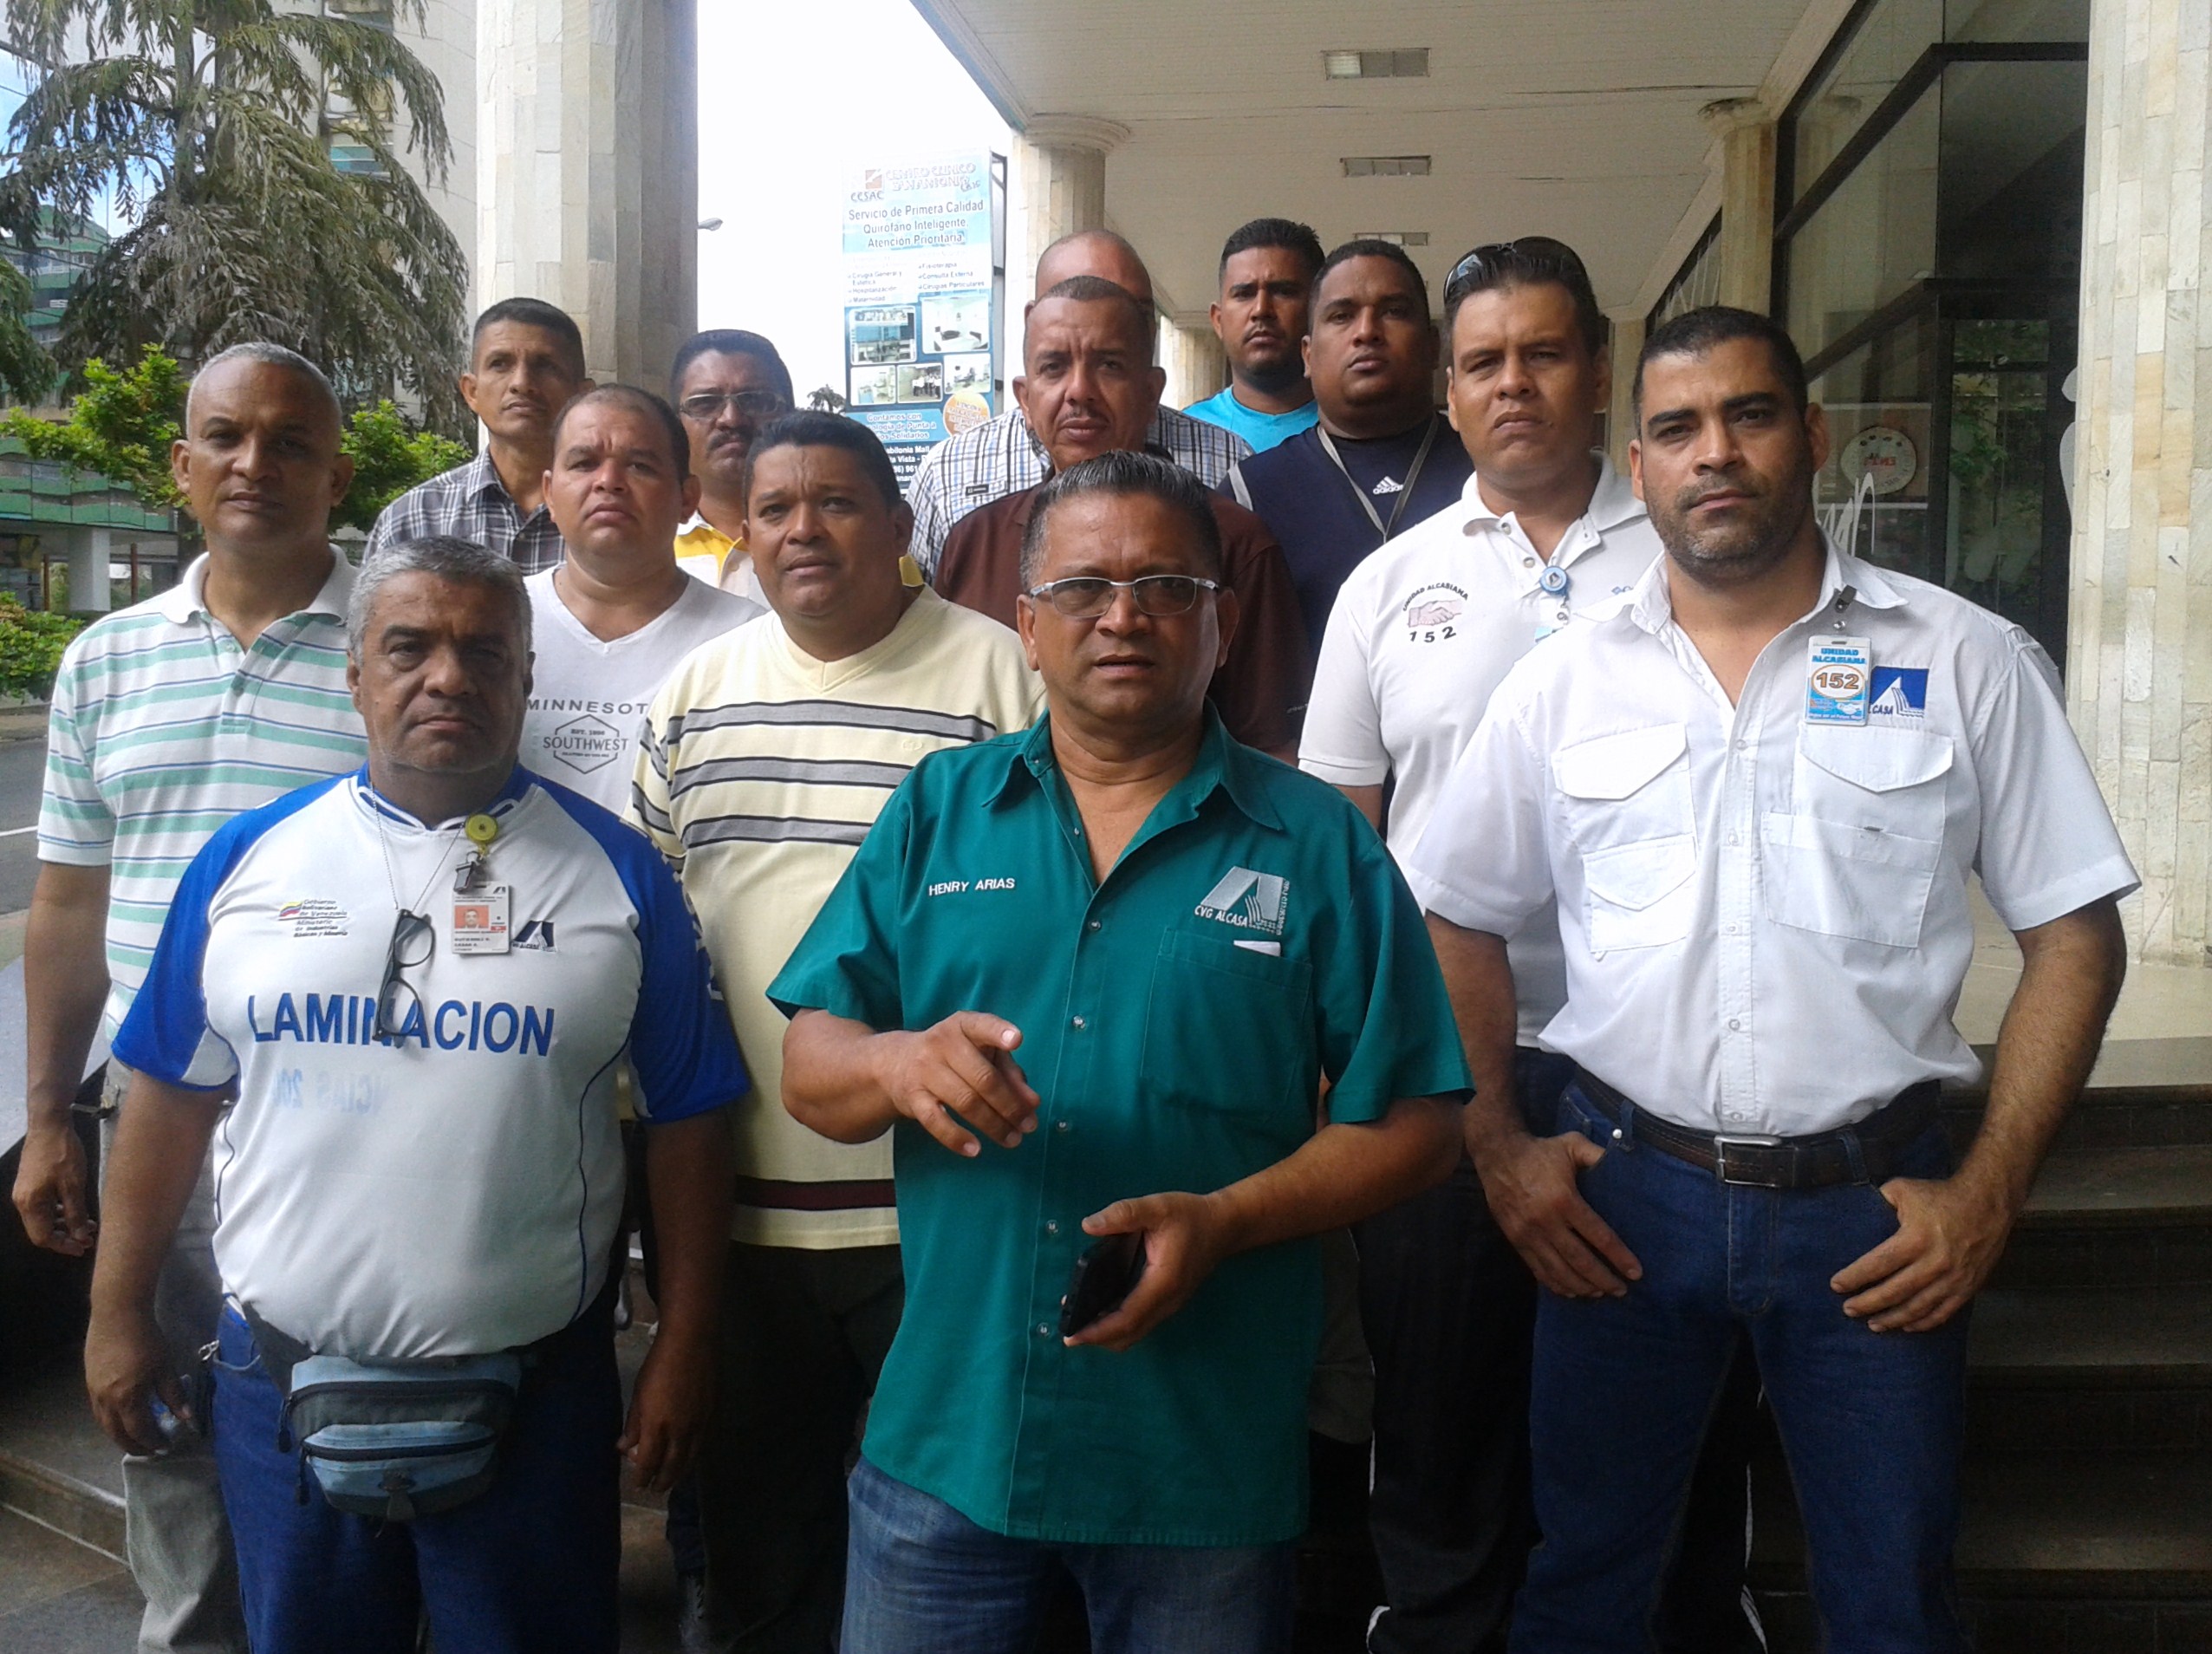 Henry Arias: Dirigencia sindical se encuentra discutiendo contratos colectivos bajo un manto de ilegalidad